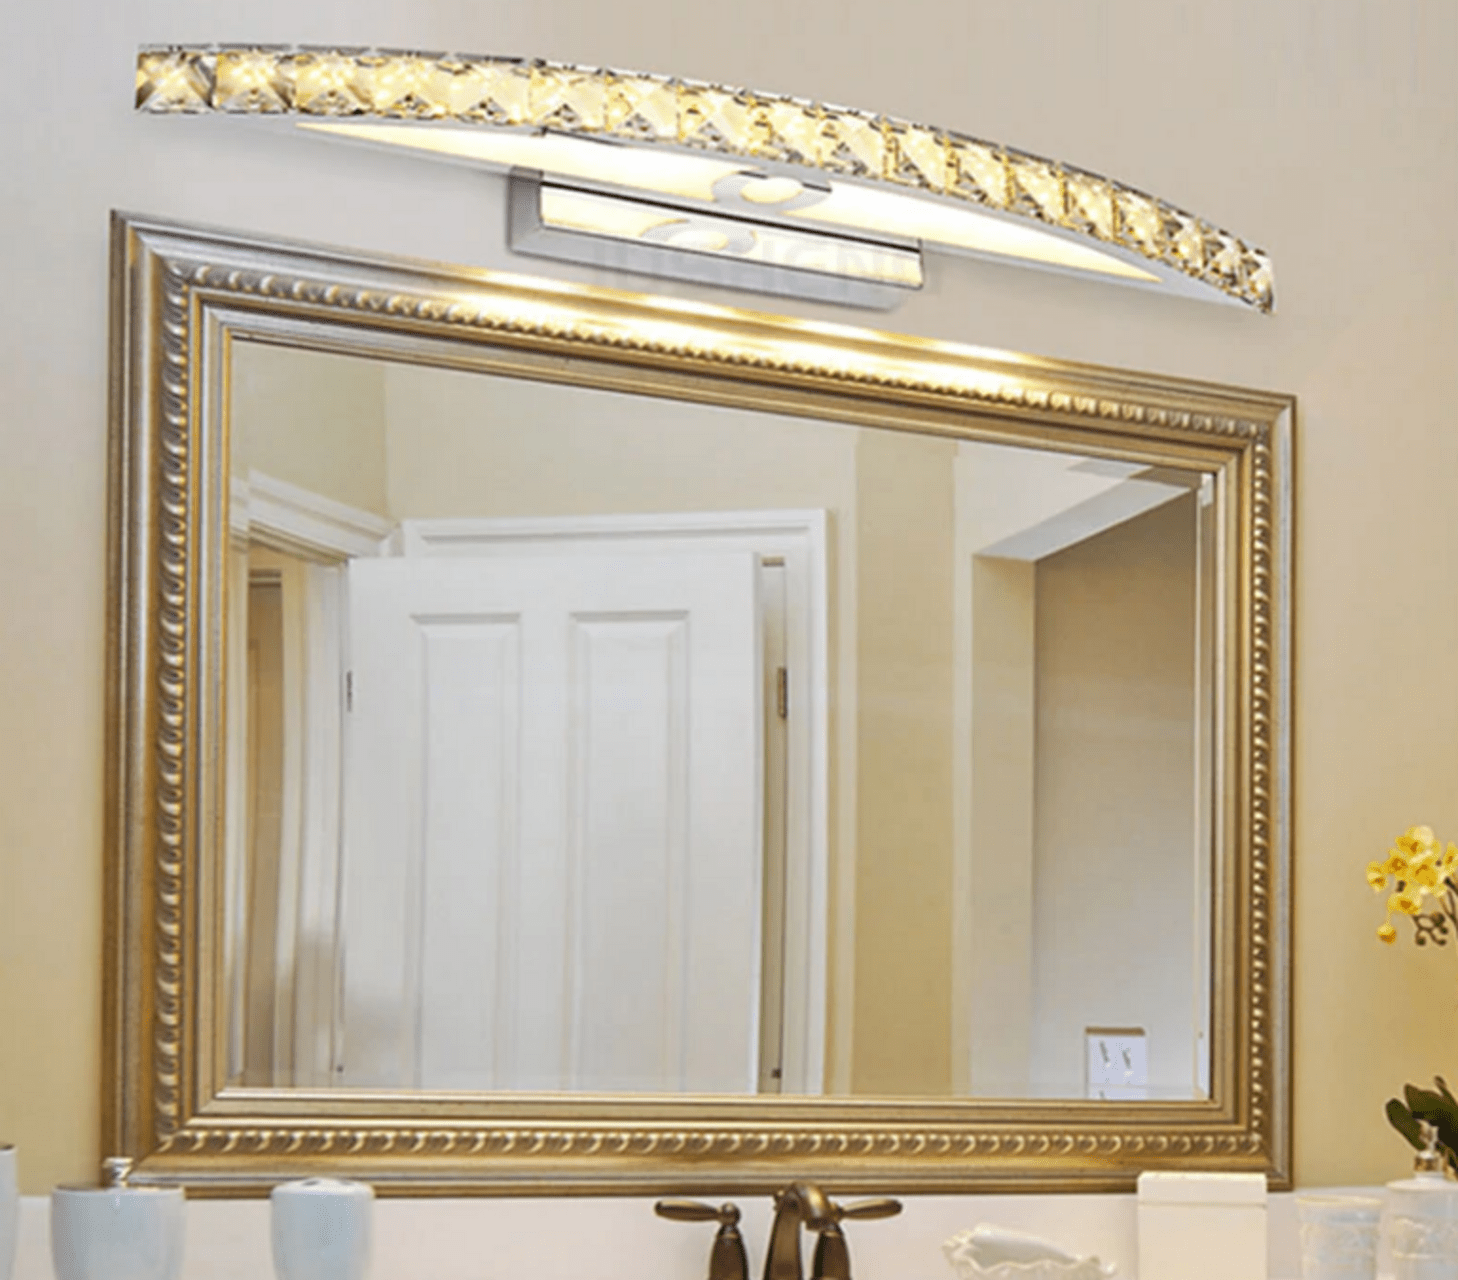 Виды подсветки для зеркала в ванной, варианты установки и подключения 17 - ДиванеТТо